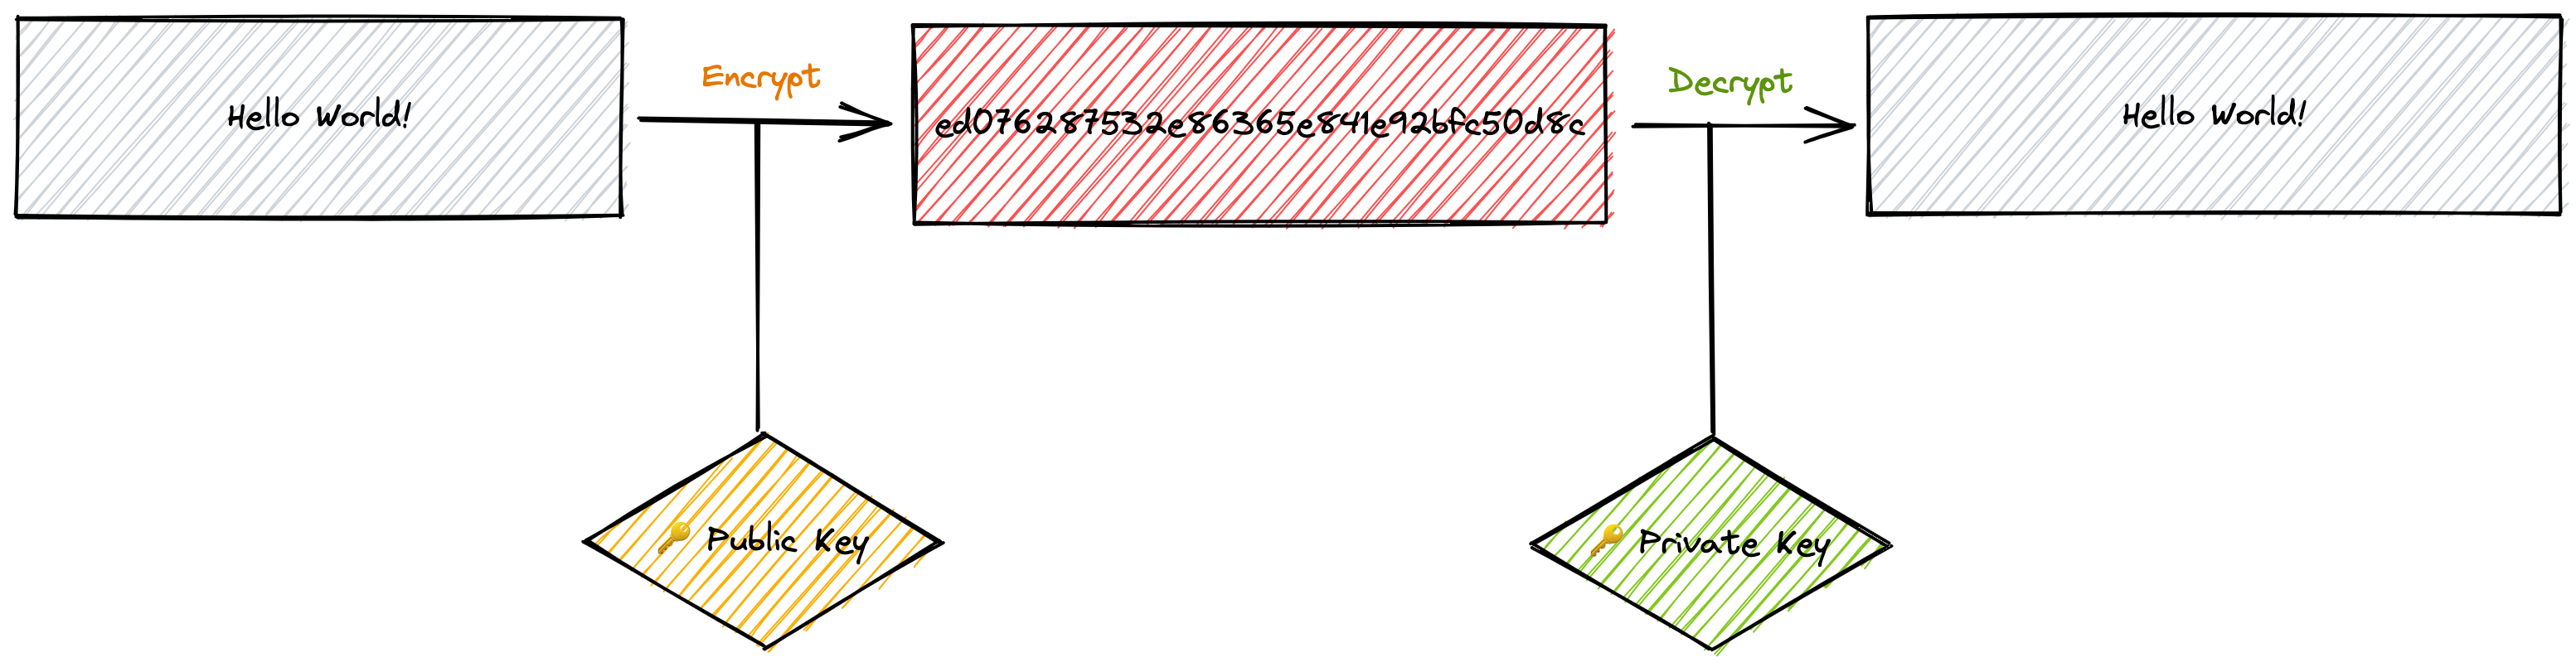 Asymmetric Encryption image